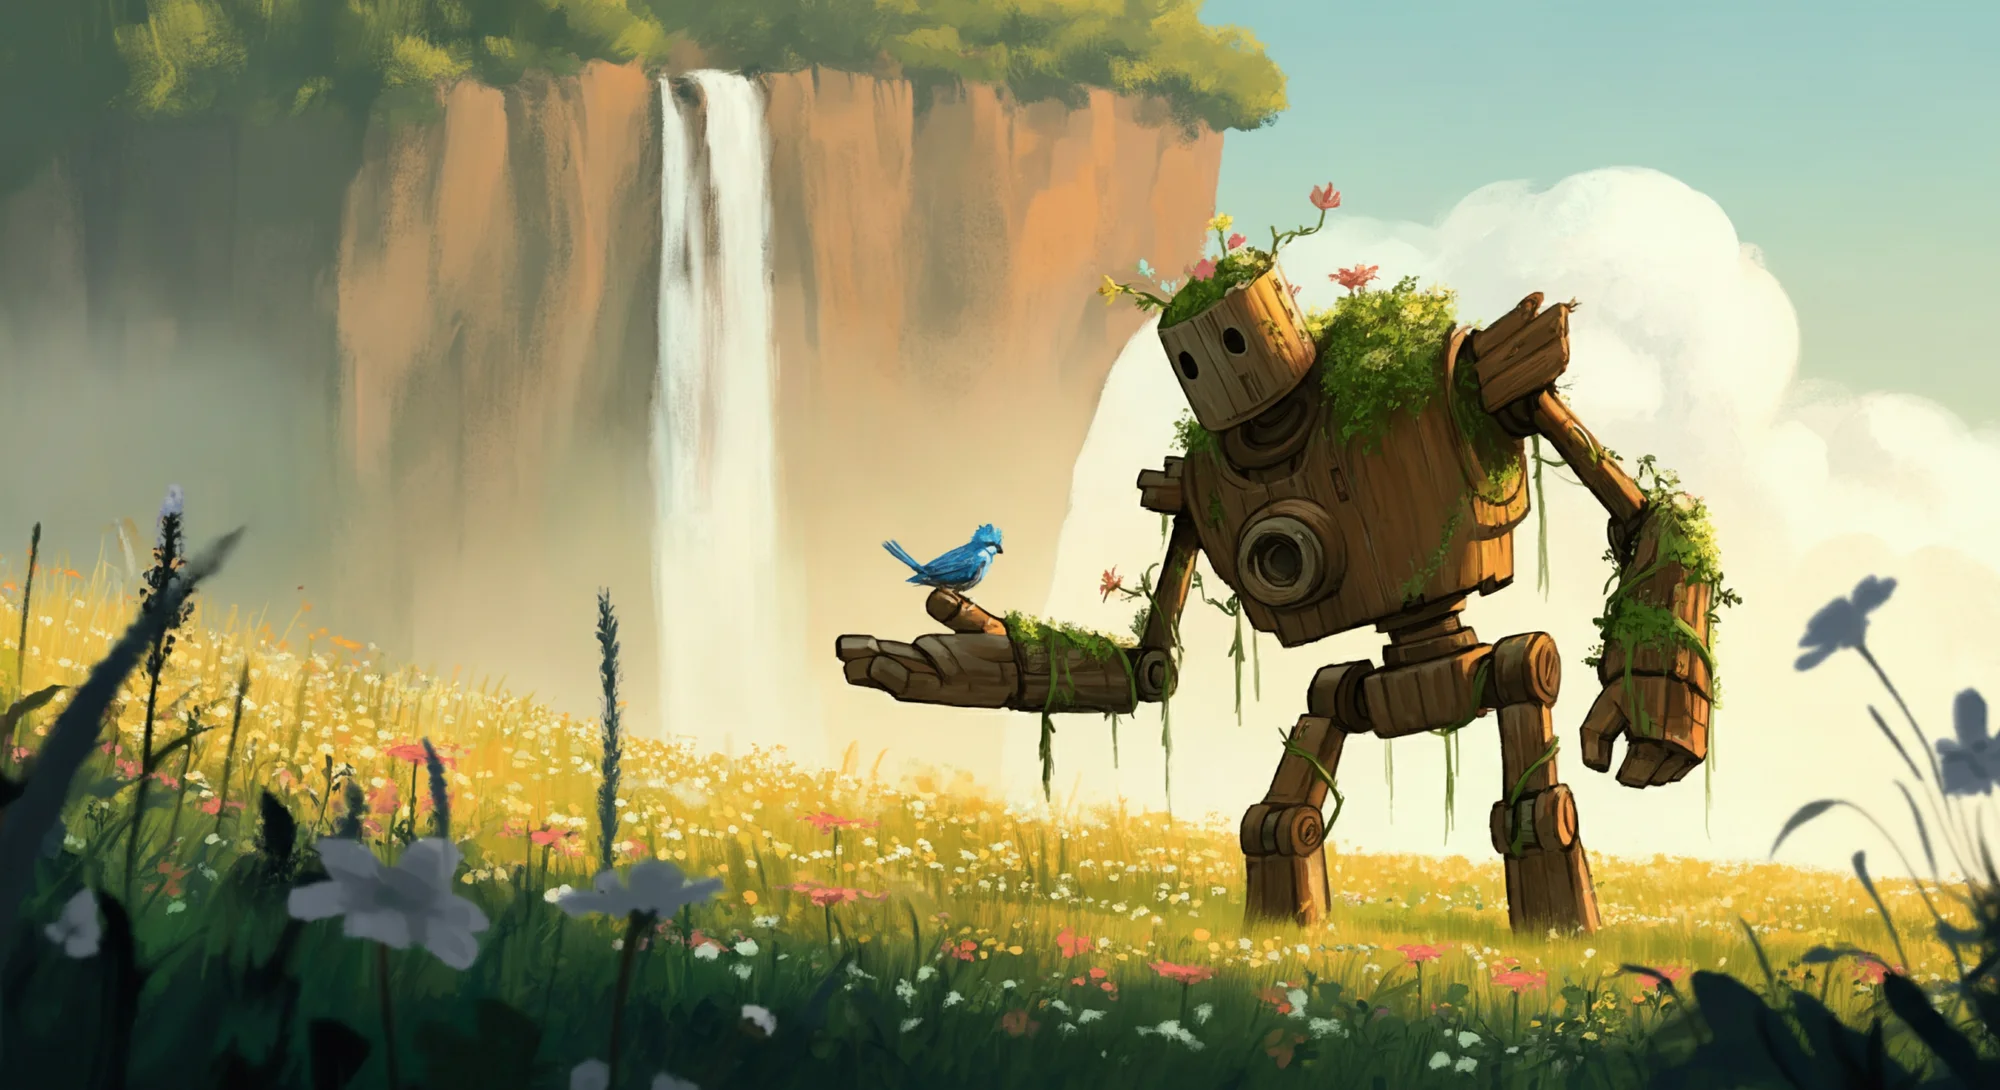 Un robot de madera cubierto de musgo se encuentra en un campo de flores silvestres y le tiende la mano a un pequeño pájaro azul posado sobre él. Una cascada cae por un acantilado al fondo.